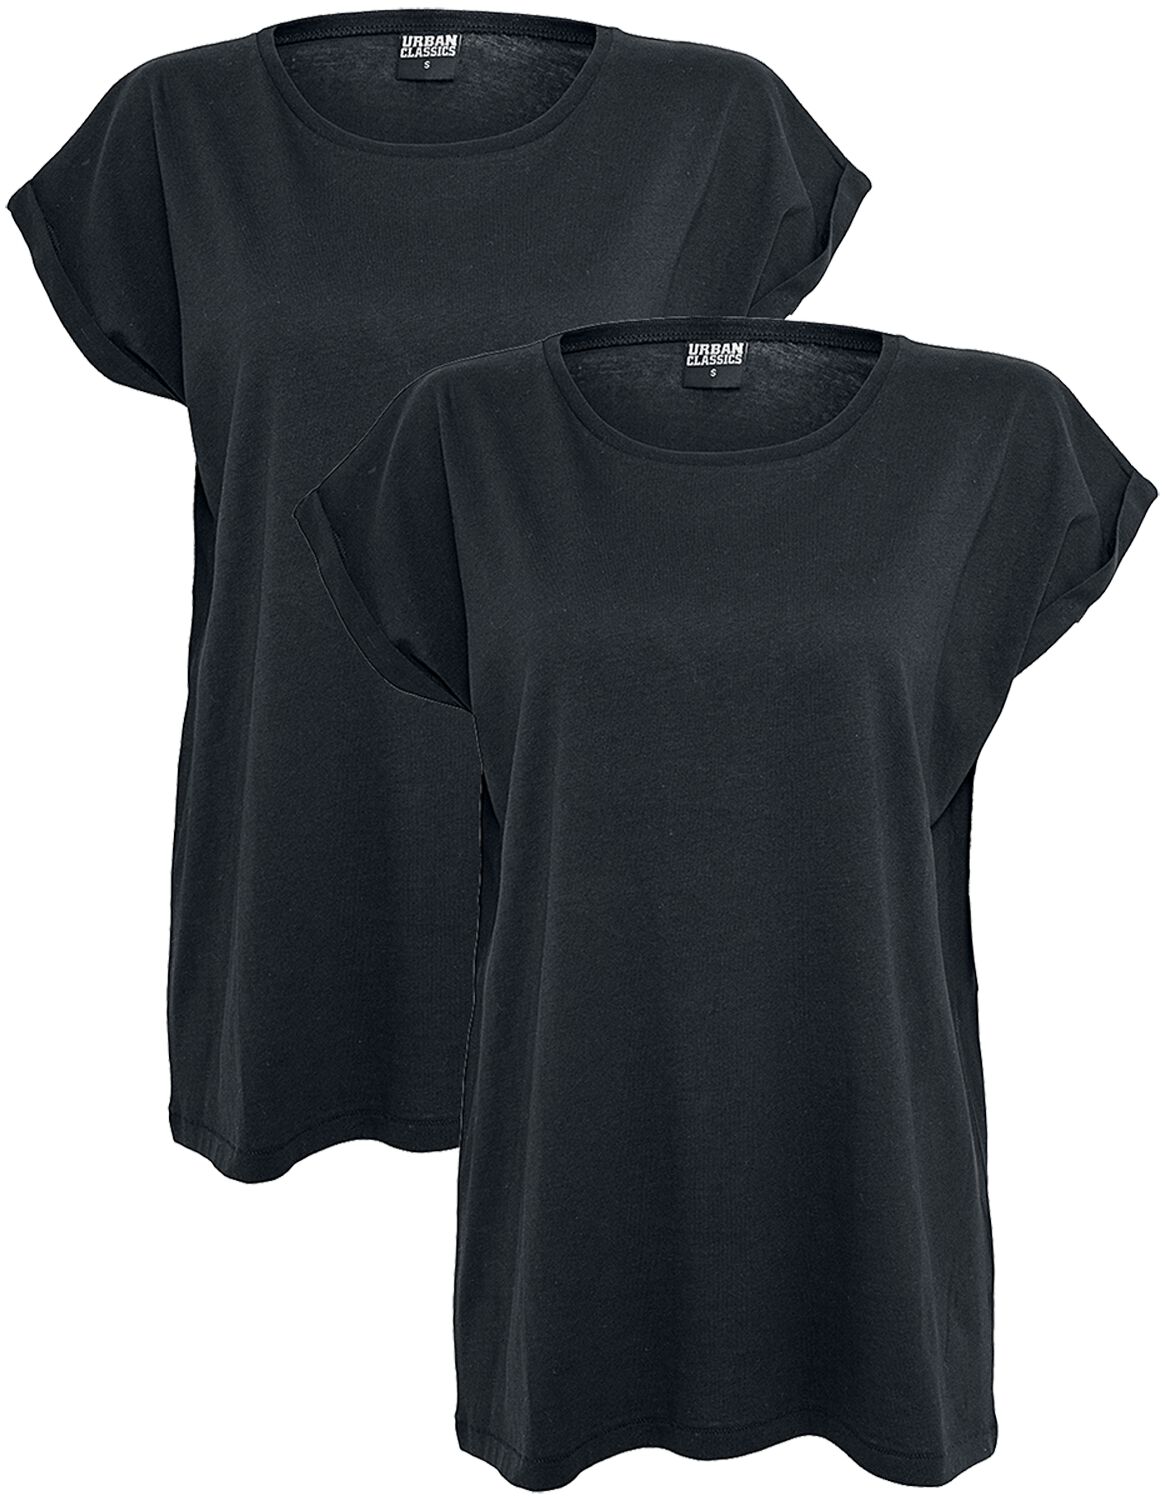 T-Shirt Manches courtes de Urban Classics - Lot de 2 T-Shirt Femme - XS à 5XL - pour Femme - noir